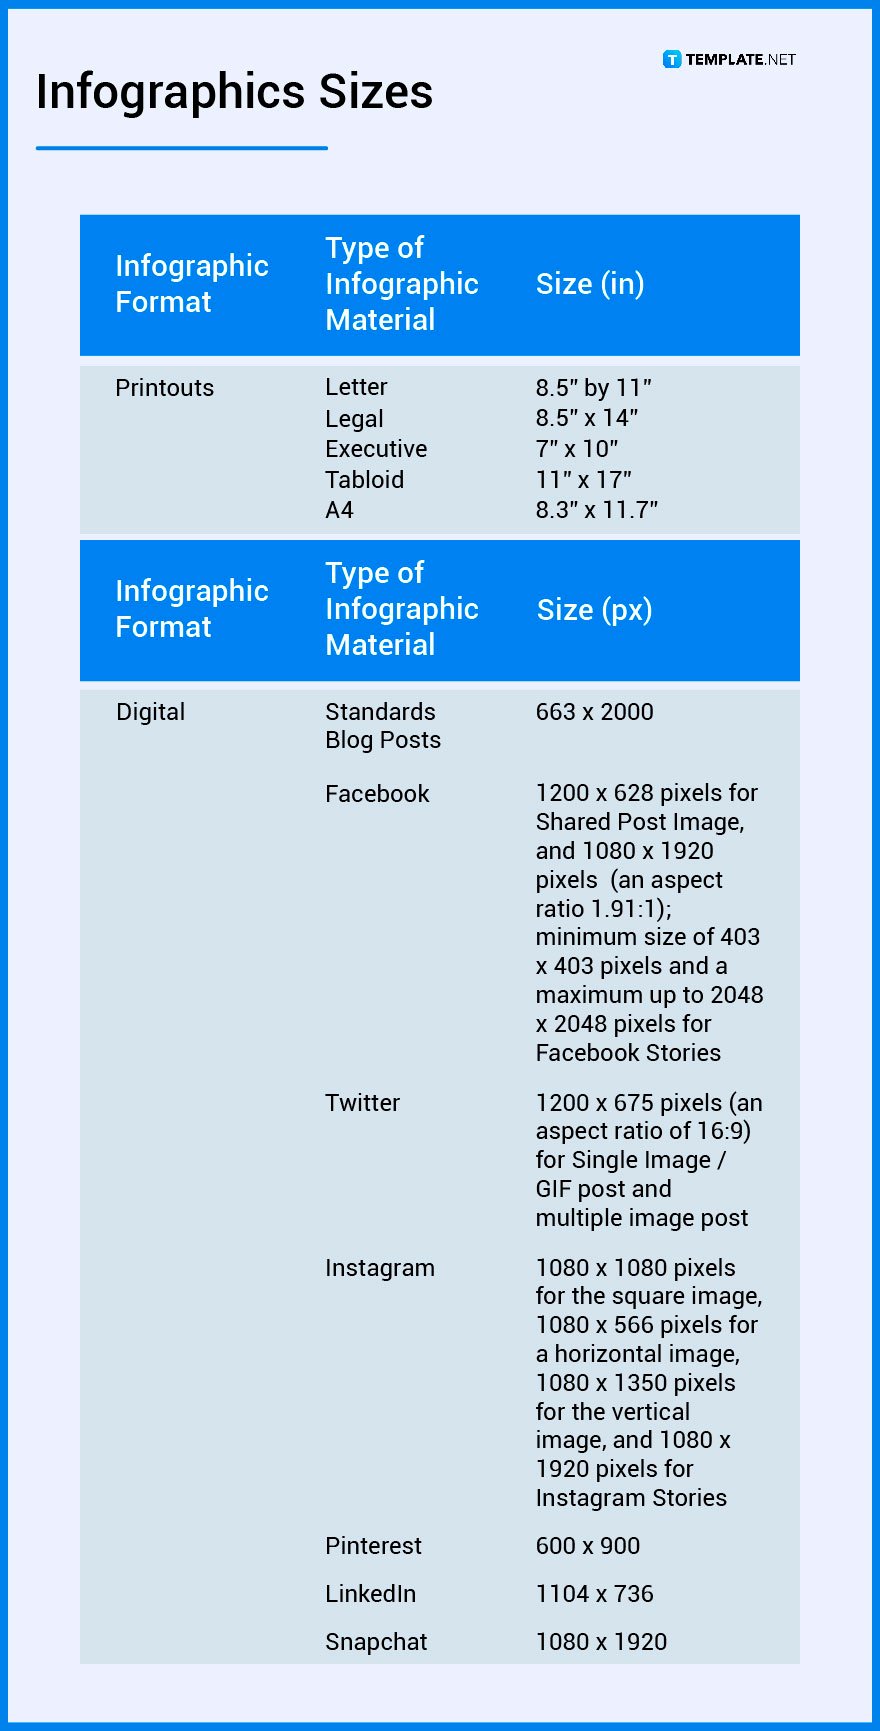 infographic sizes